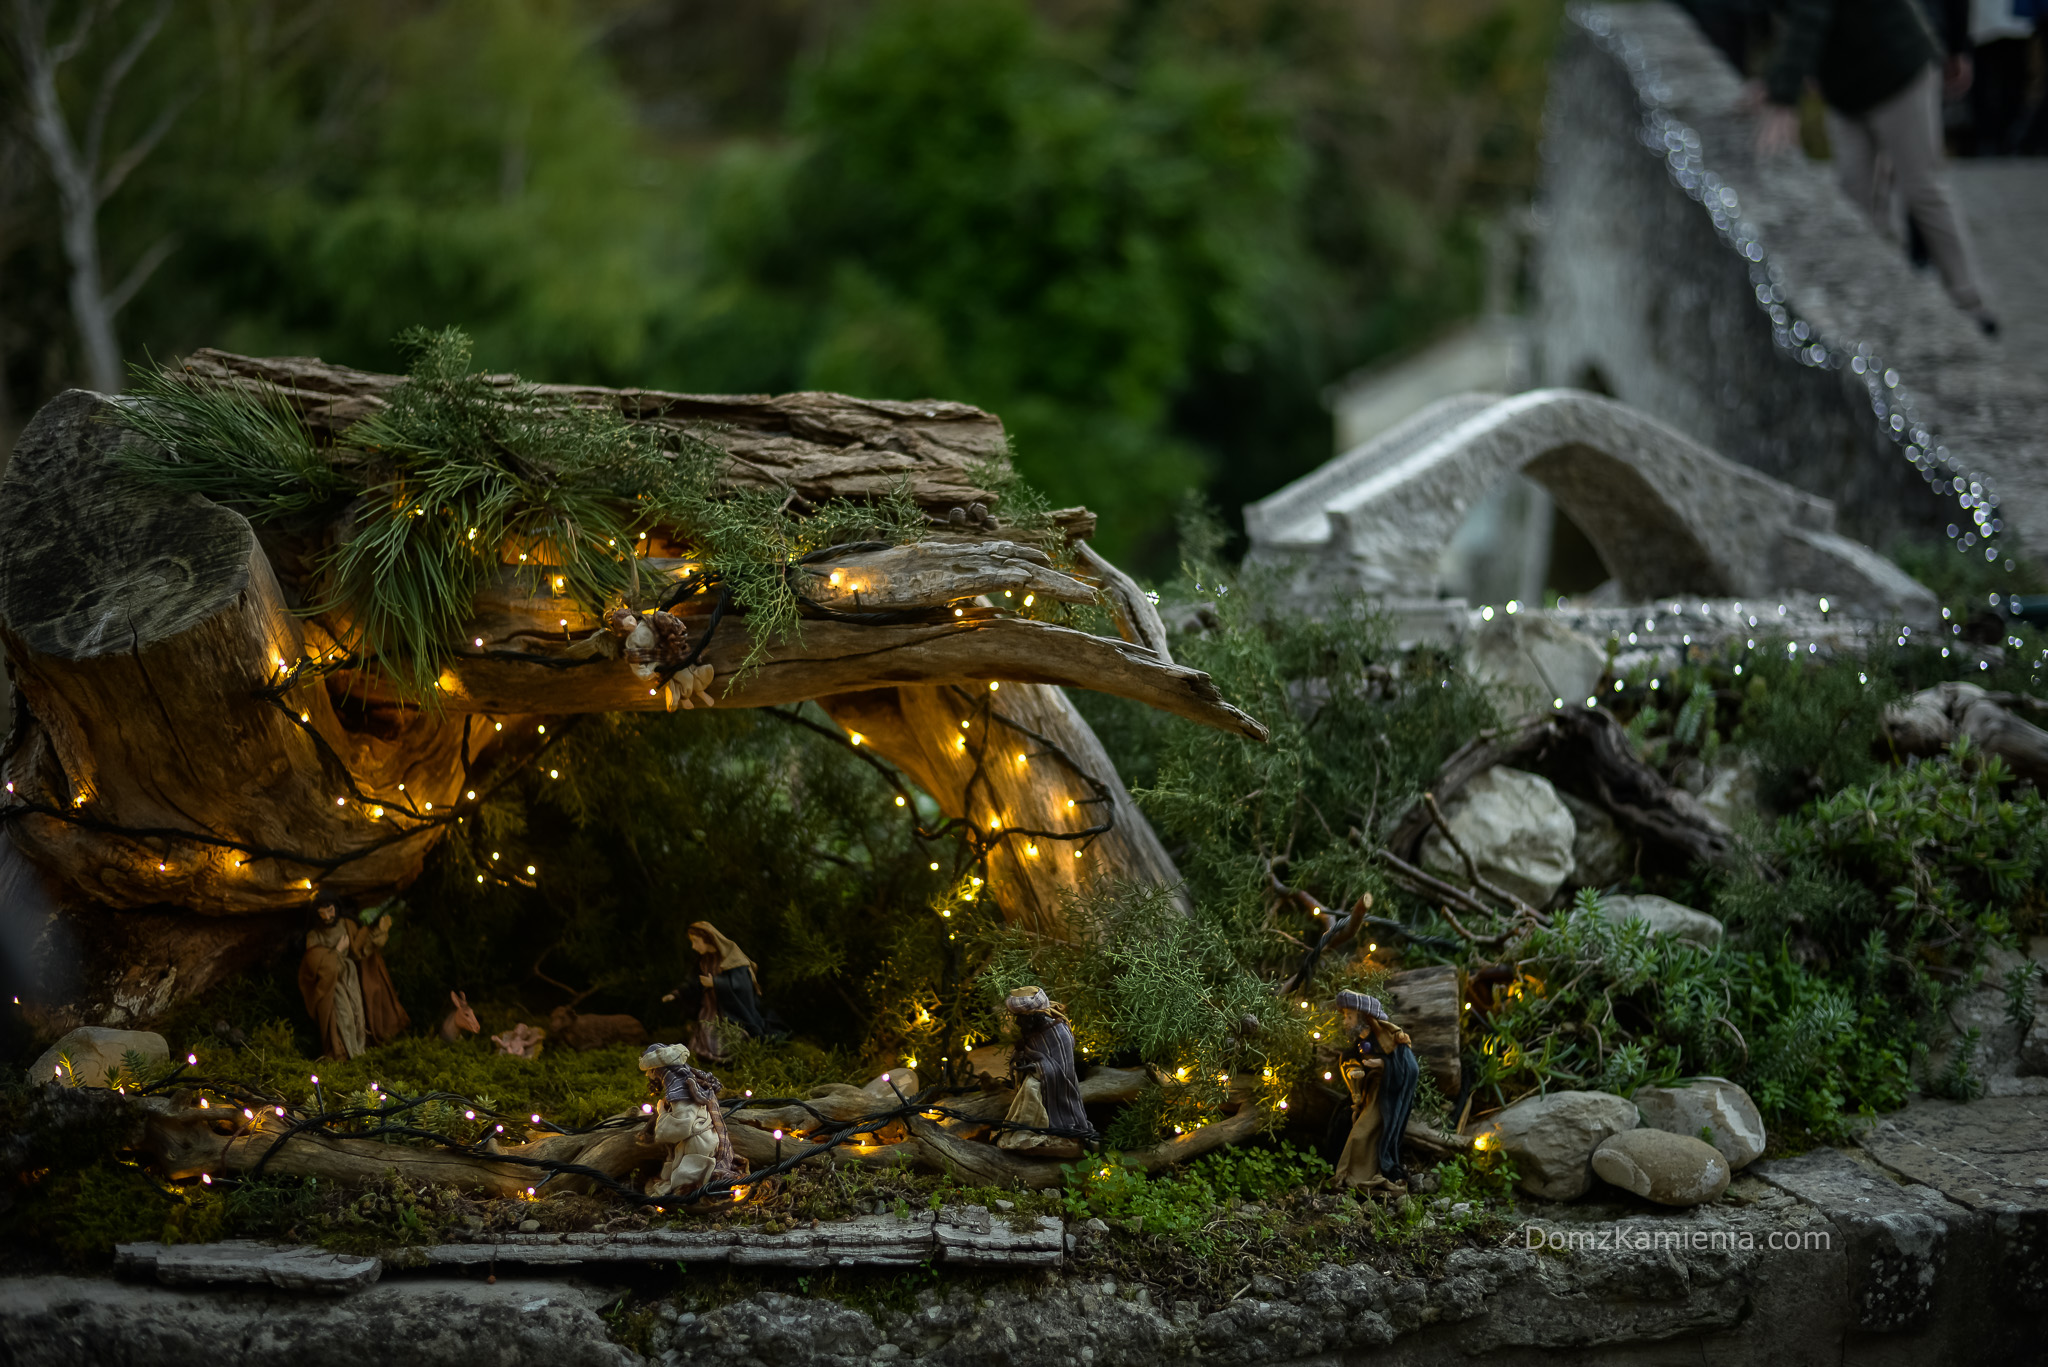 Boże Narodzenie we Włoszech Dom z Kamienia blog o życiu w Toskanii